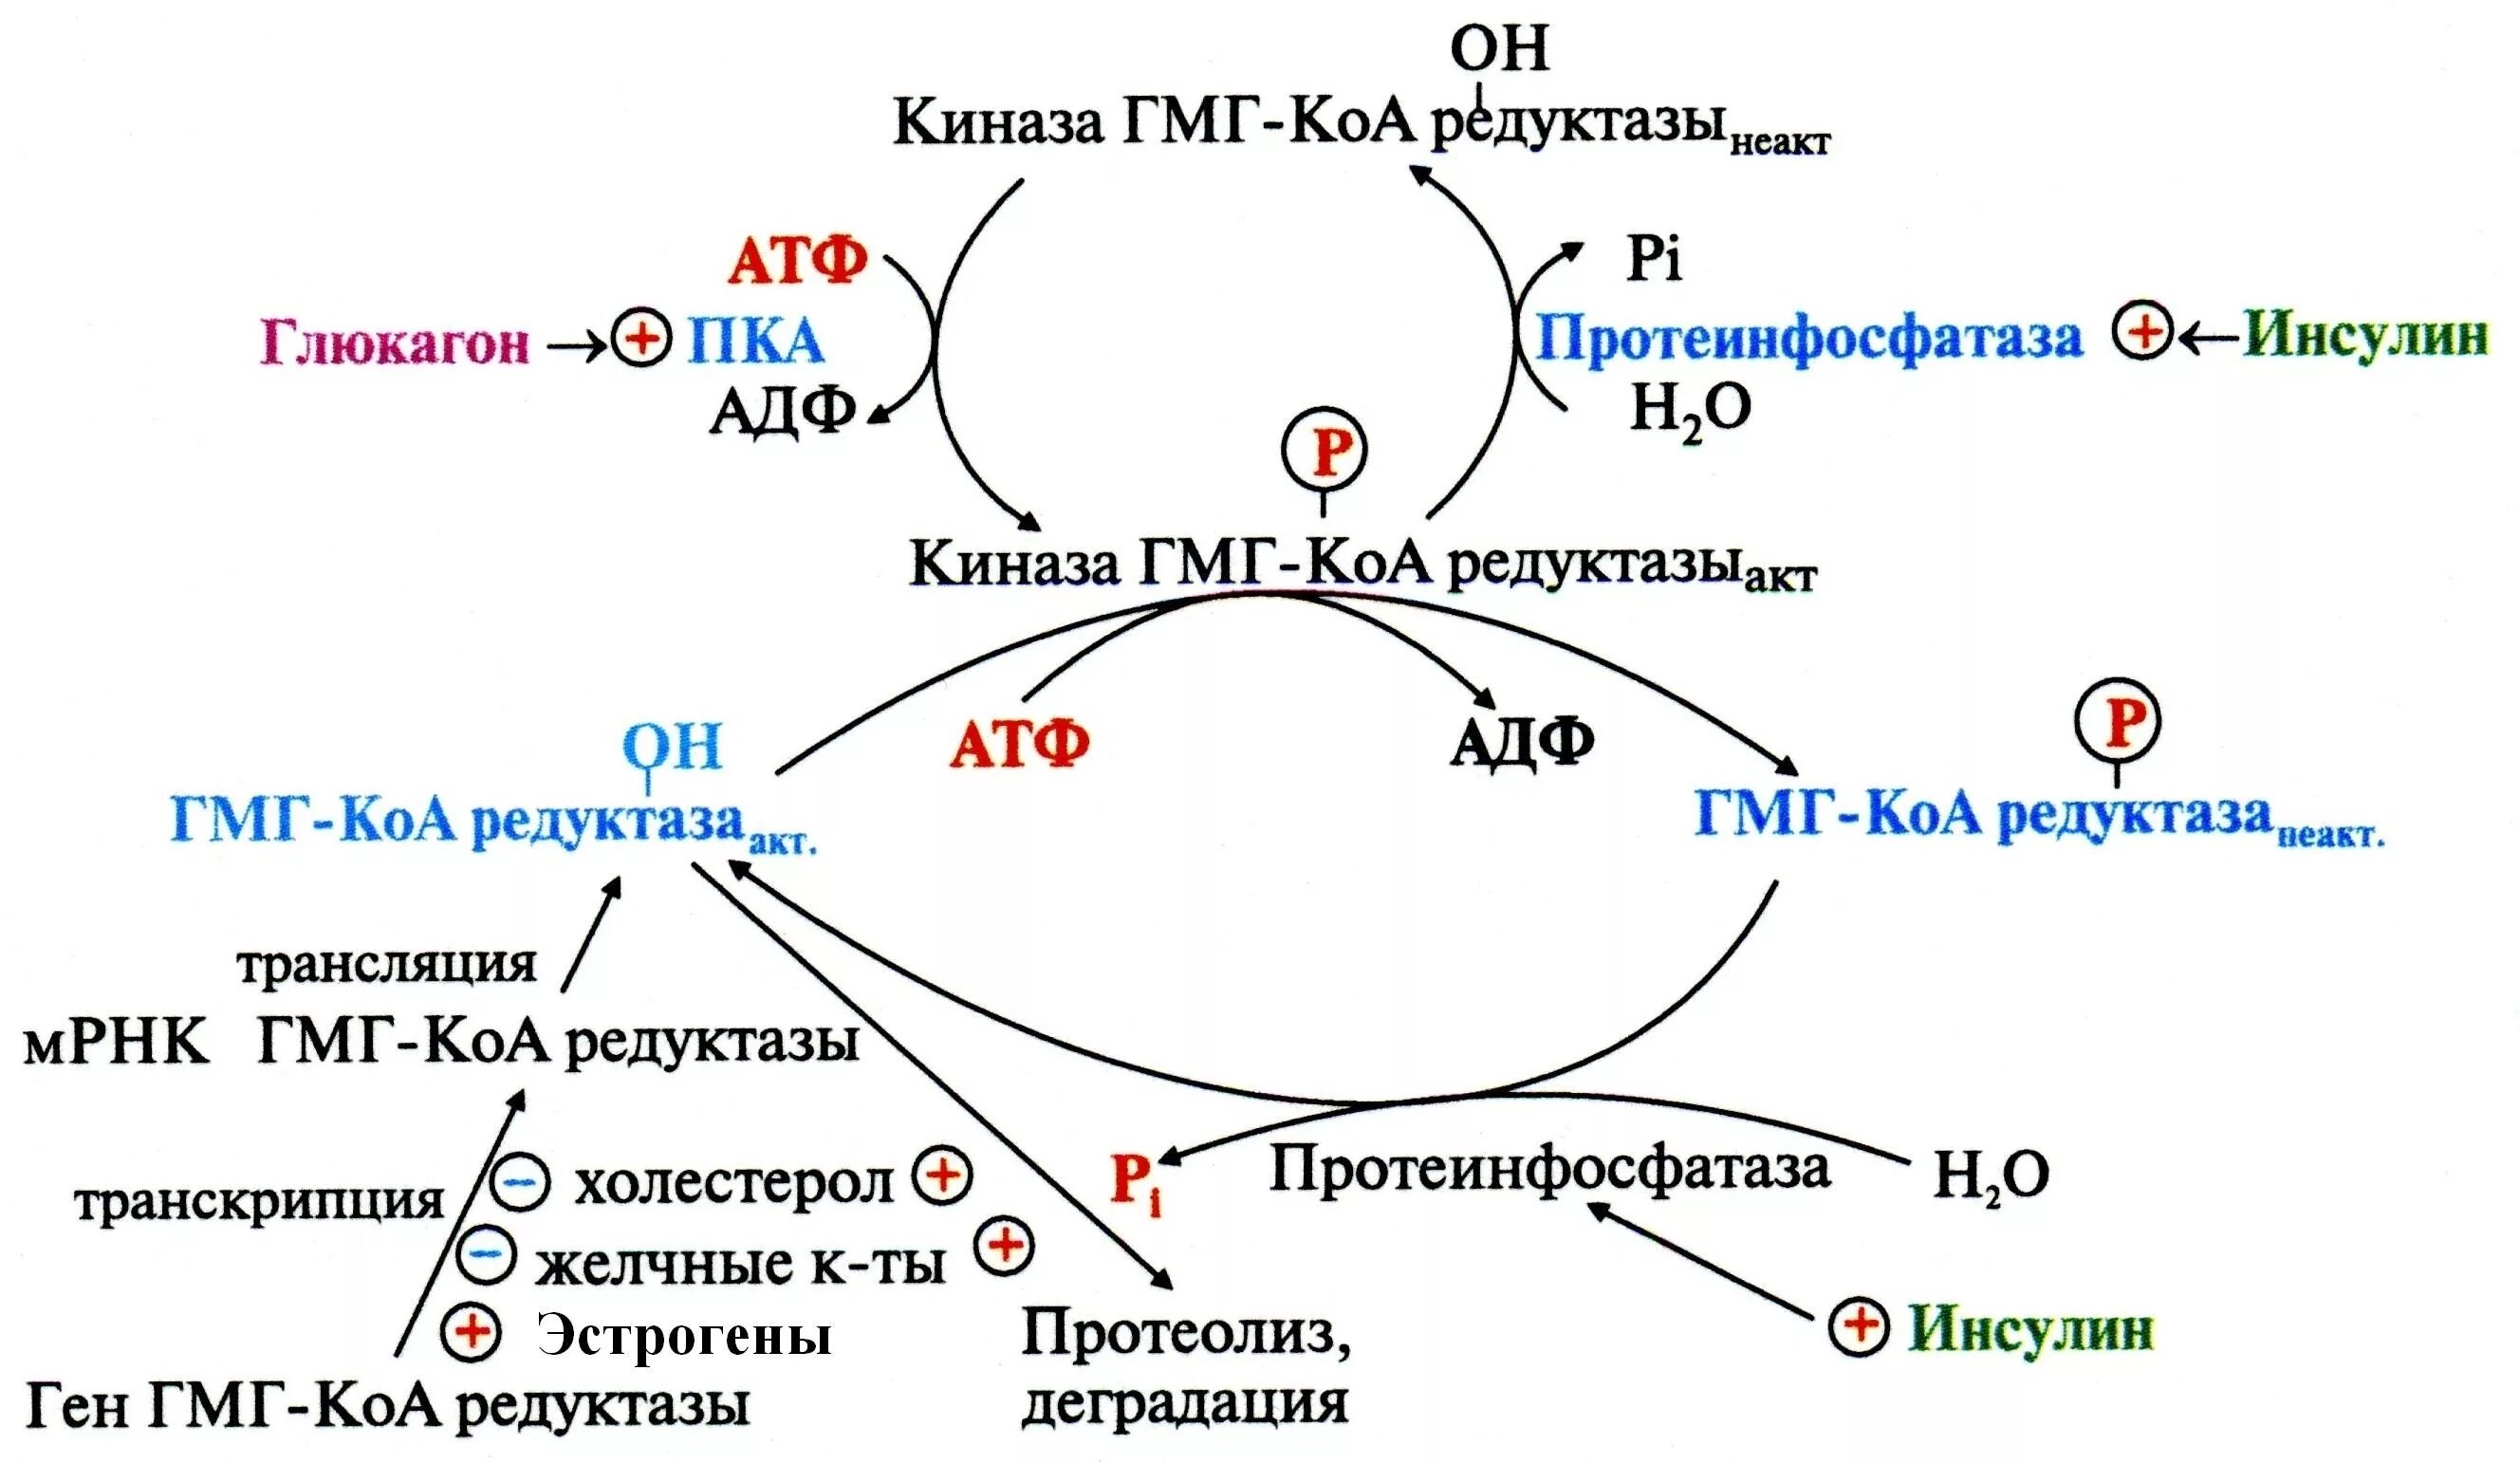 Регуляция активности ГМГ-КОА-редуктазы. Механизмы регуляции ГМГ-КОА-редуктазы. Регуляция активности ГМГ-КОА-редуктазы схема. Схема регуляции синтеза холестерола.